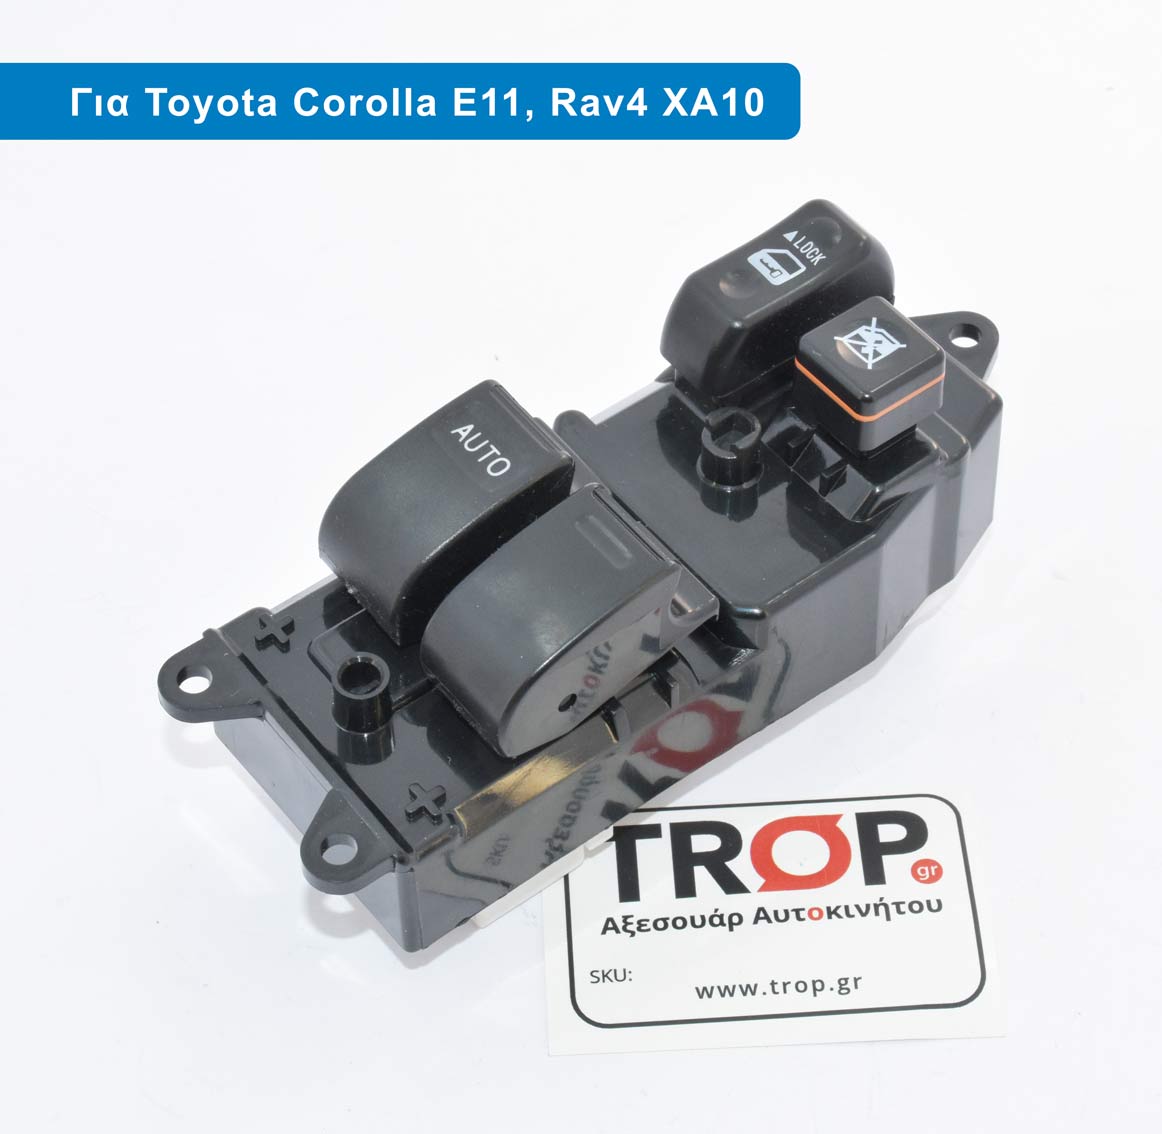 Διακόπτης Ηλεκτρικών Παραθύρων για Toyota Corolla (E11), Rav4 (XA10) – 13 Pin – Φωτογραφία από Trop.gr